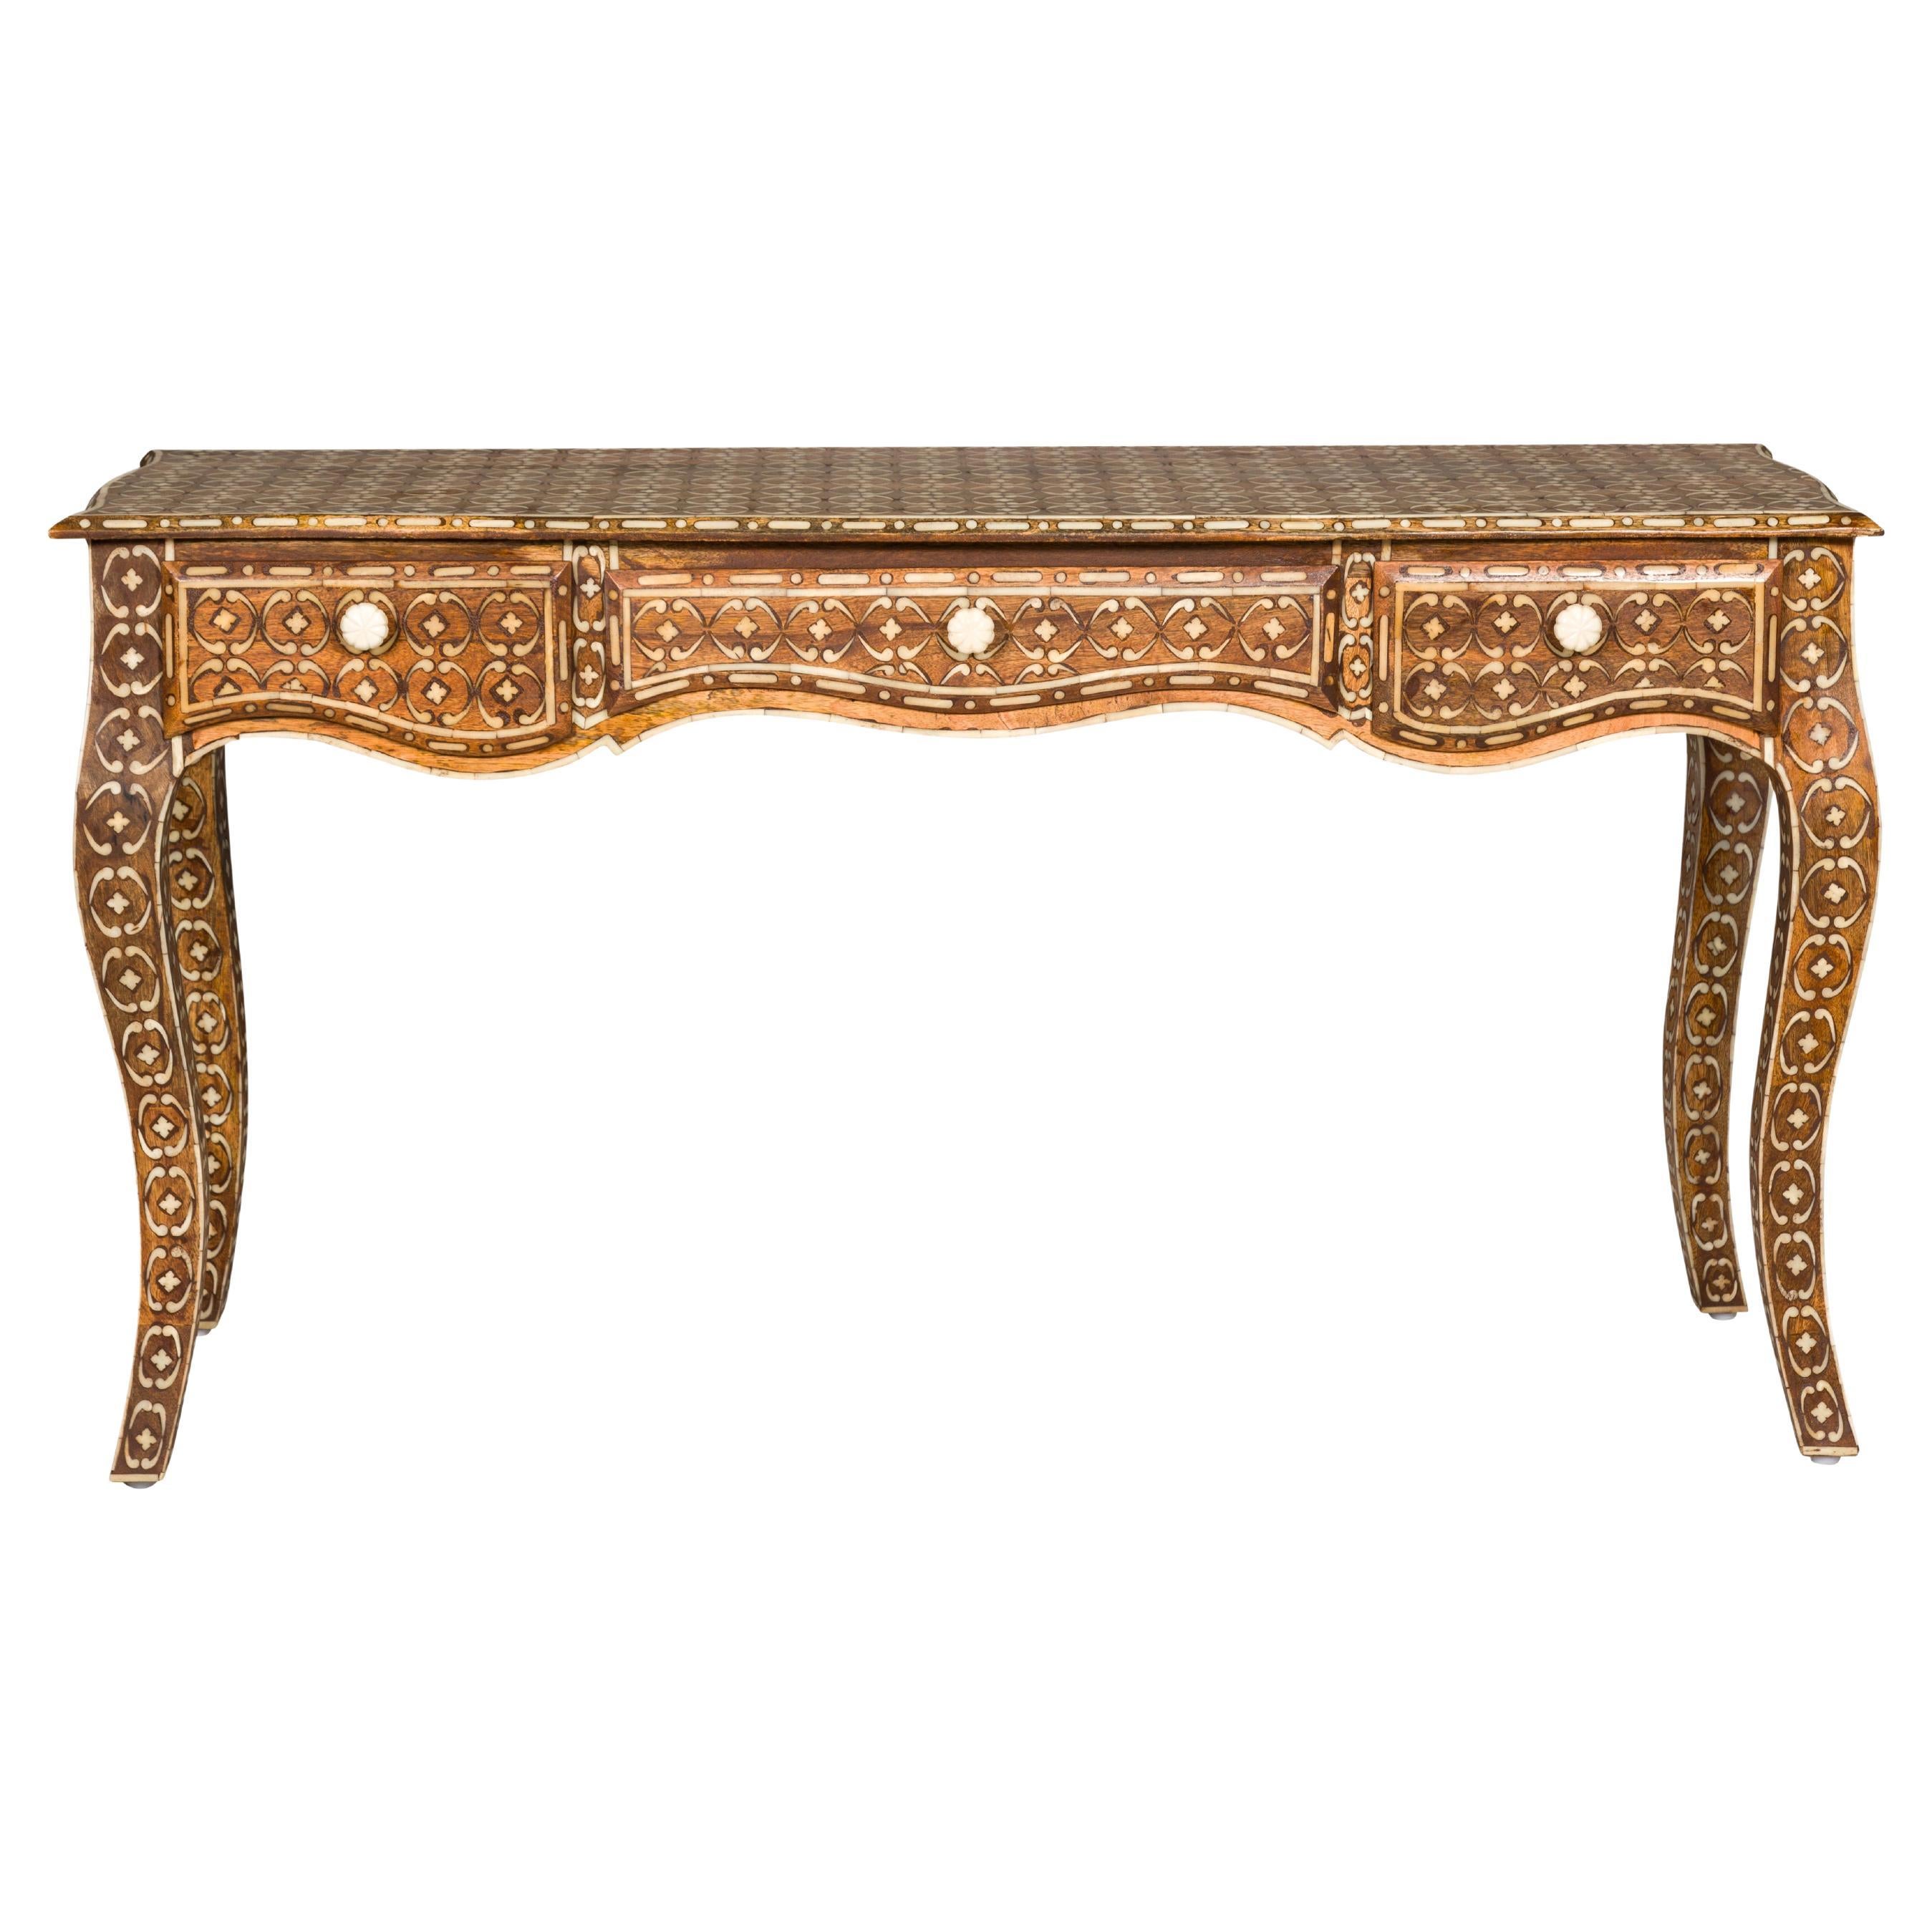 Table console anglo-indienne de style Louis XV avec trois tiroirs et incrustation d'os